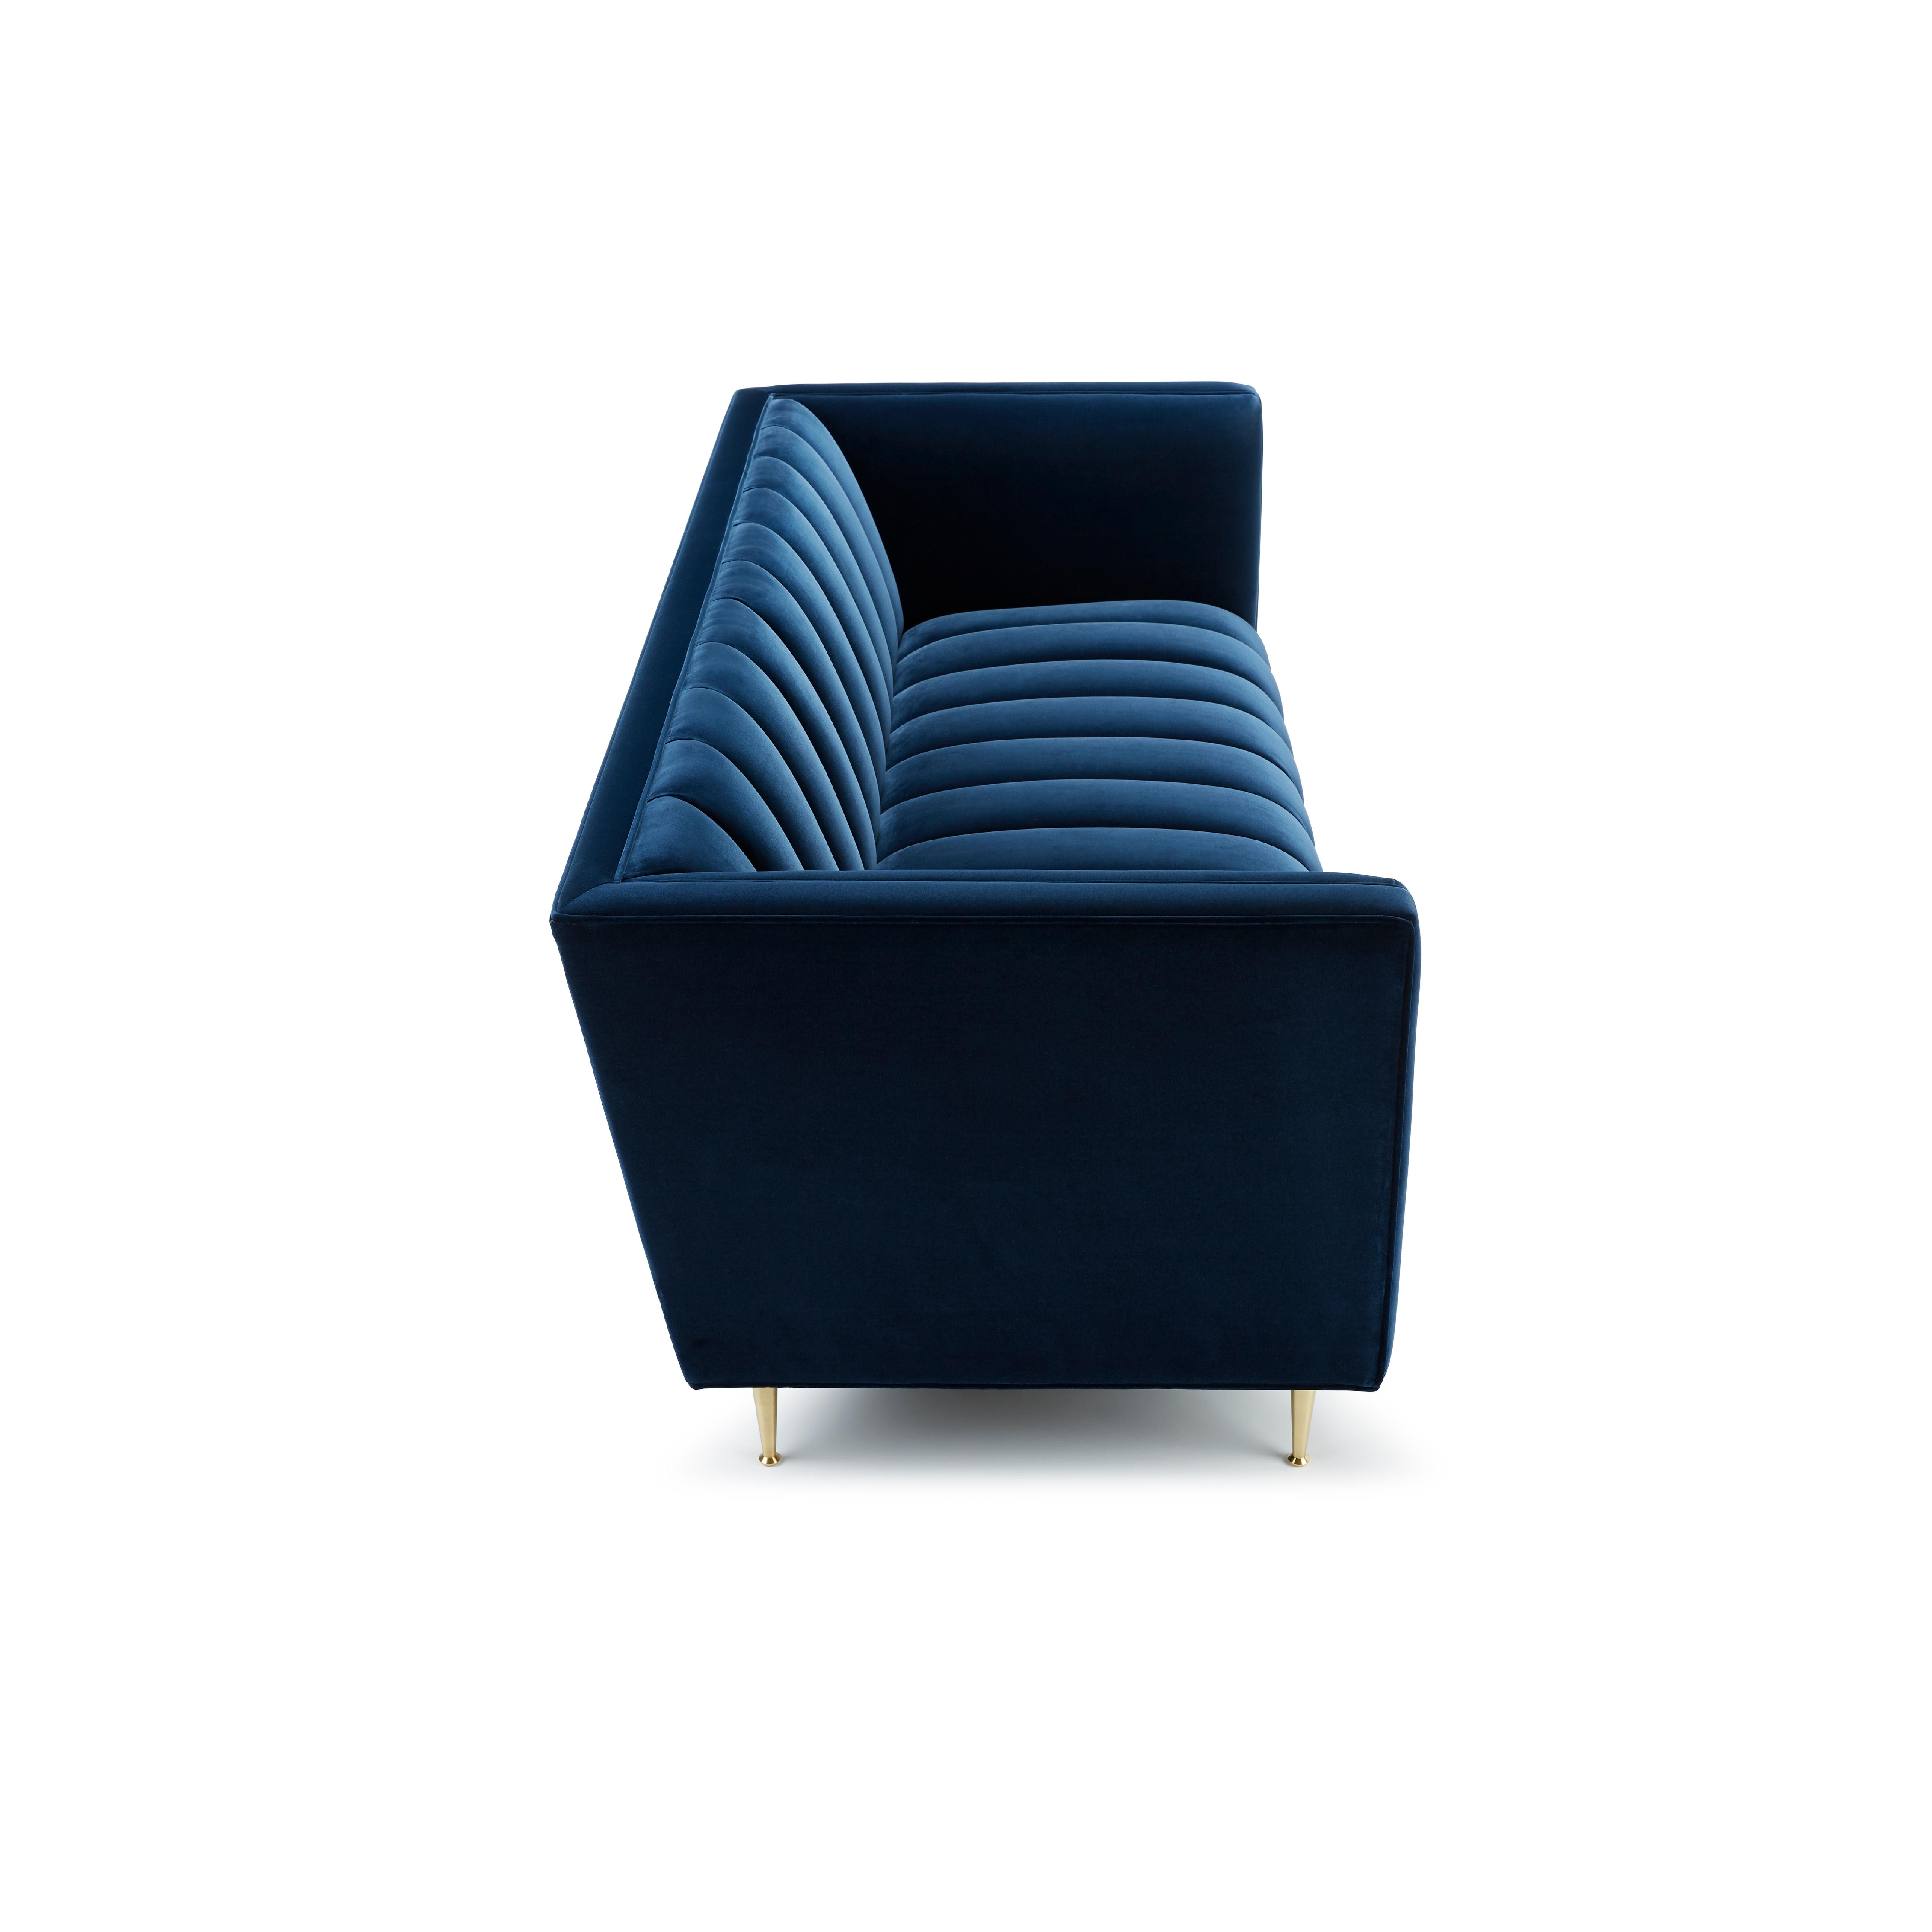 Die Fleure Signature Edition ist unsere jüngste Neuauflage des preisgekrönten Fleure 3-Sitzer-Sofas, das mit einem hochwertigen Baumwollsamtbezug neu interpretiert wurde.

Dieses charakteristische Stück strahlt Luxus aus, mit perfekt geformten